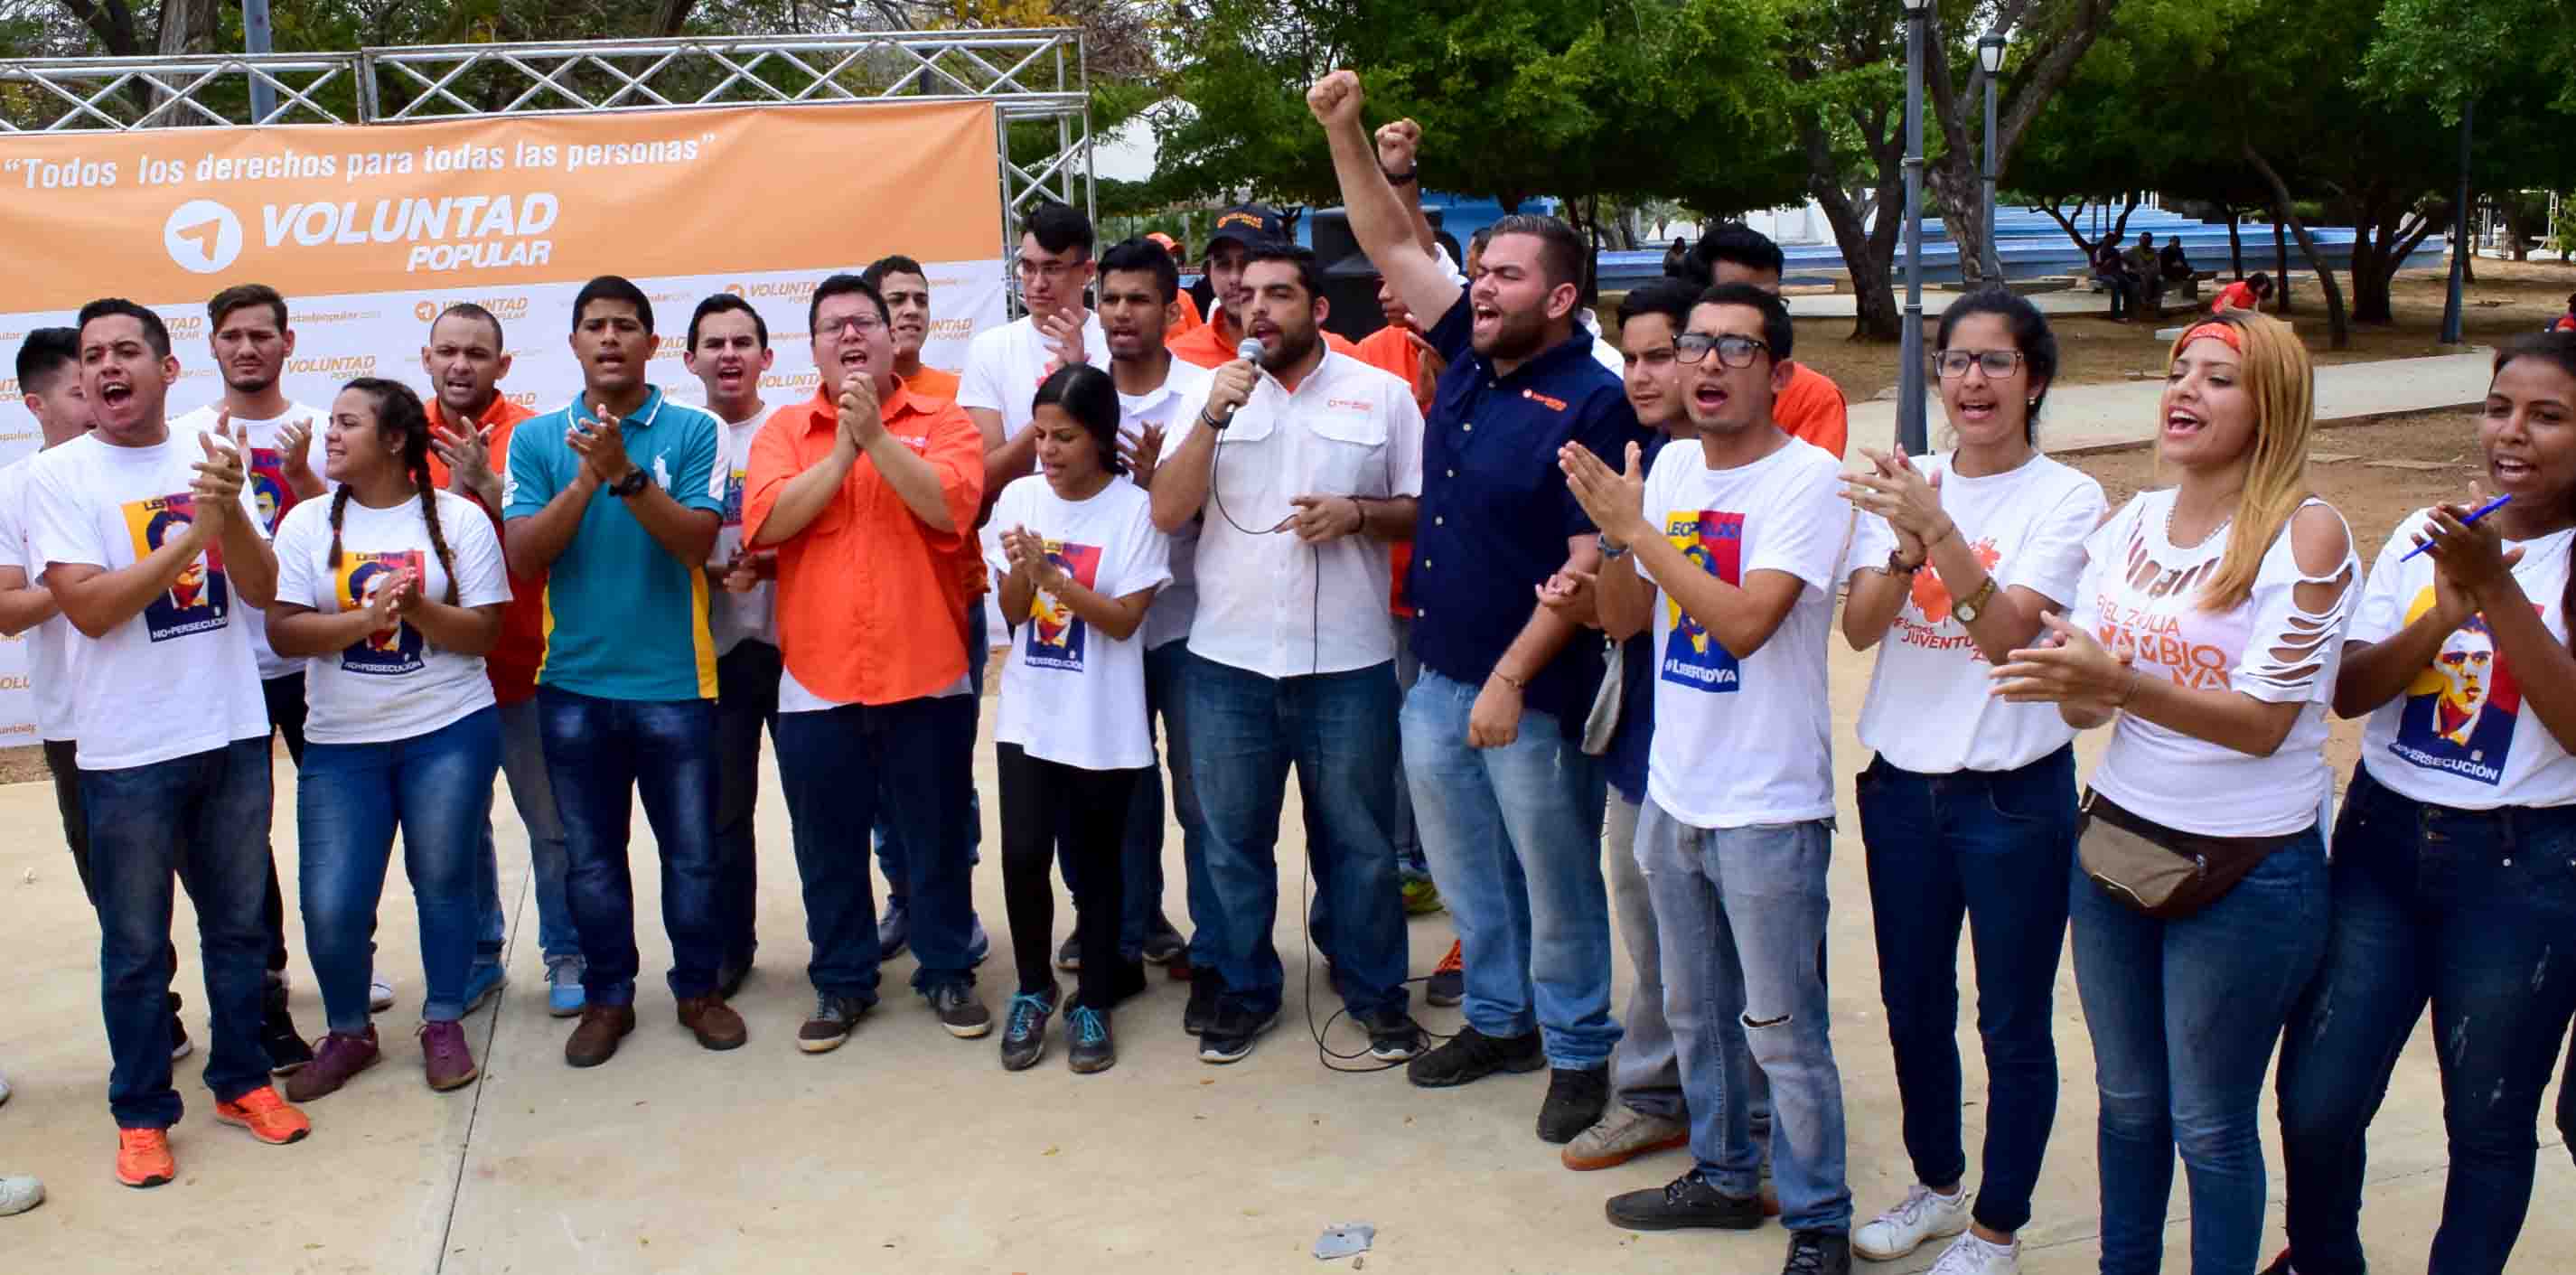 Voluntad Popular: Diober Rojas, funcionario del CNE, es el responsable del retraso de la validación en Maracaibo